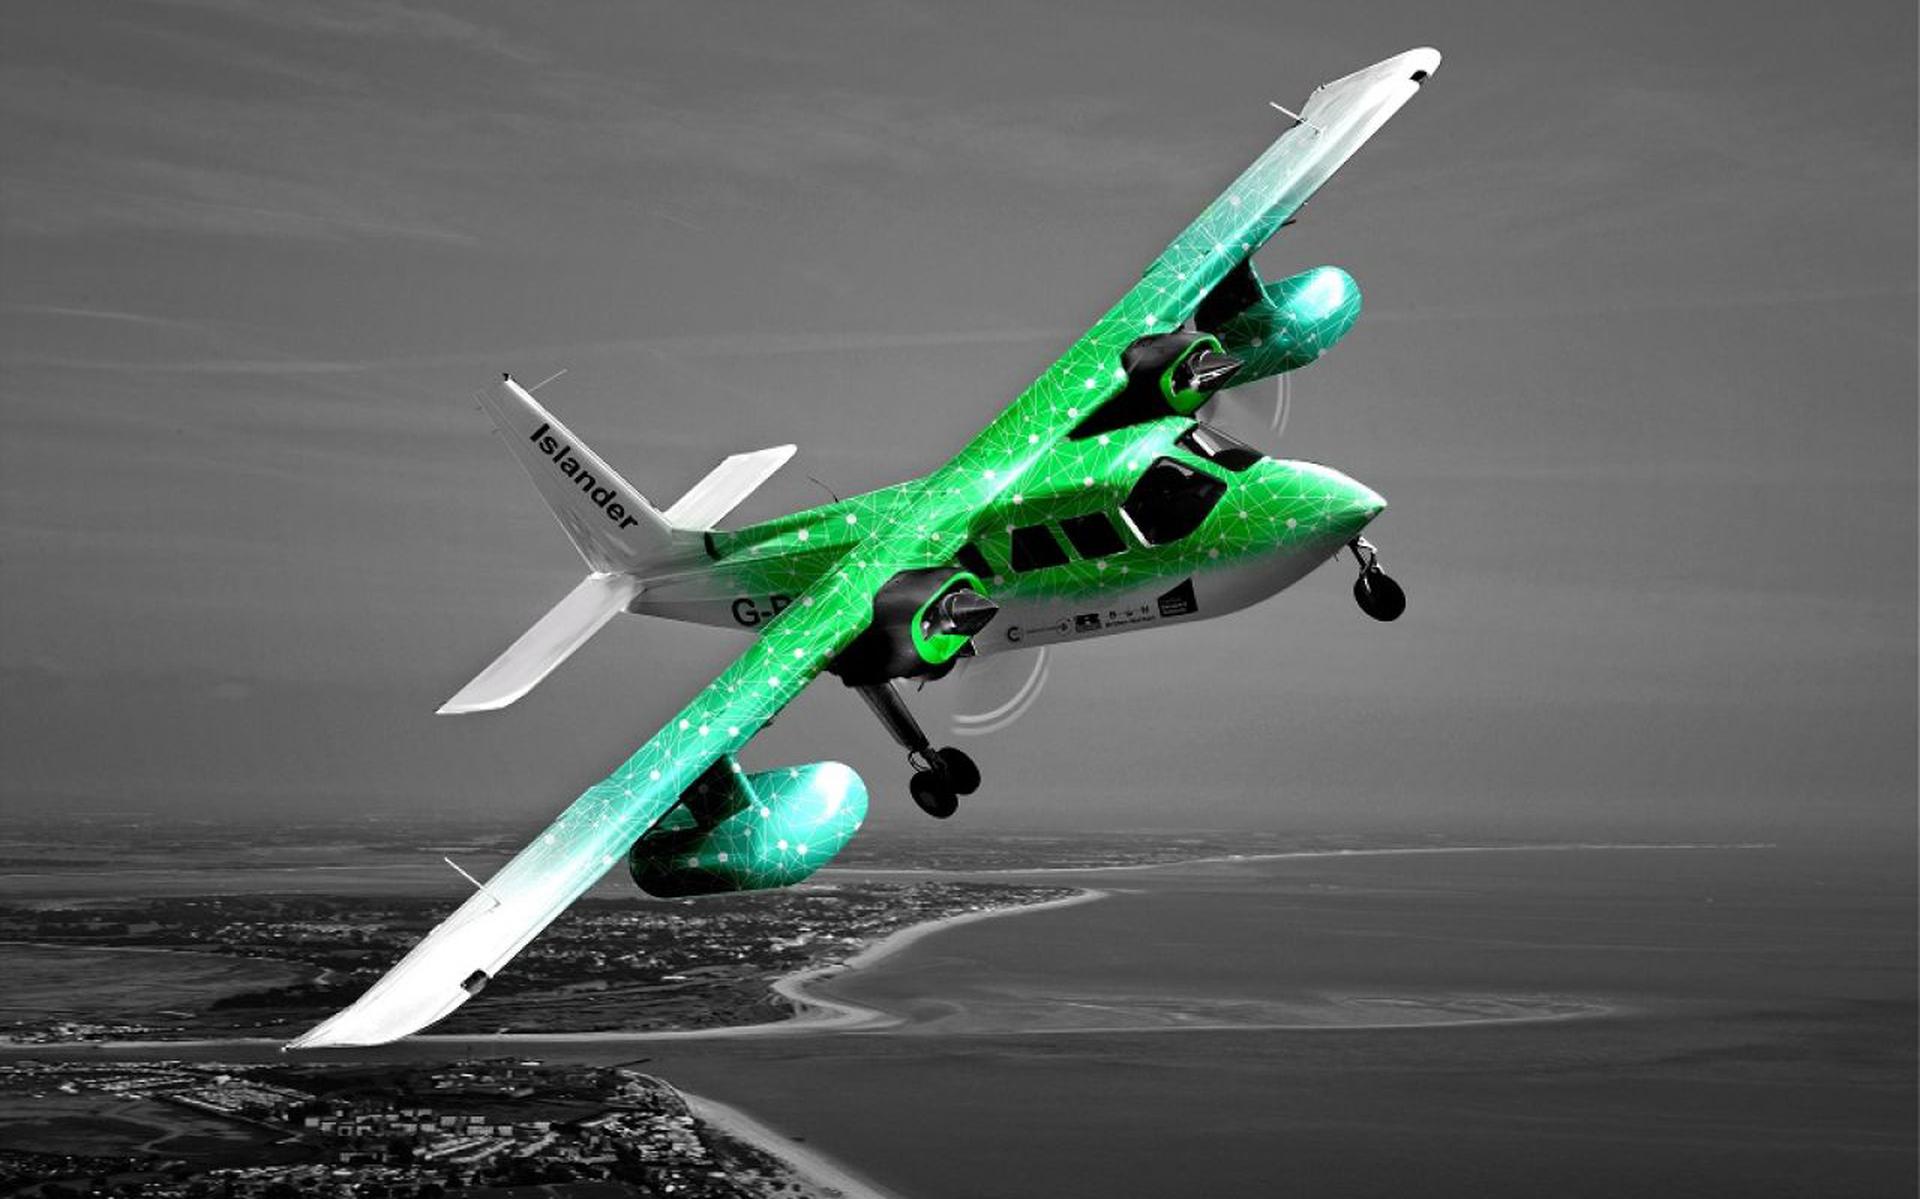 Duitse luchtvaartmaatschappij wil zich op met elektrische vliegtuigen - Dagblad van het Noorden